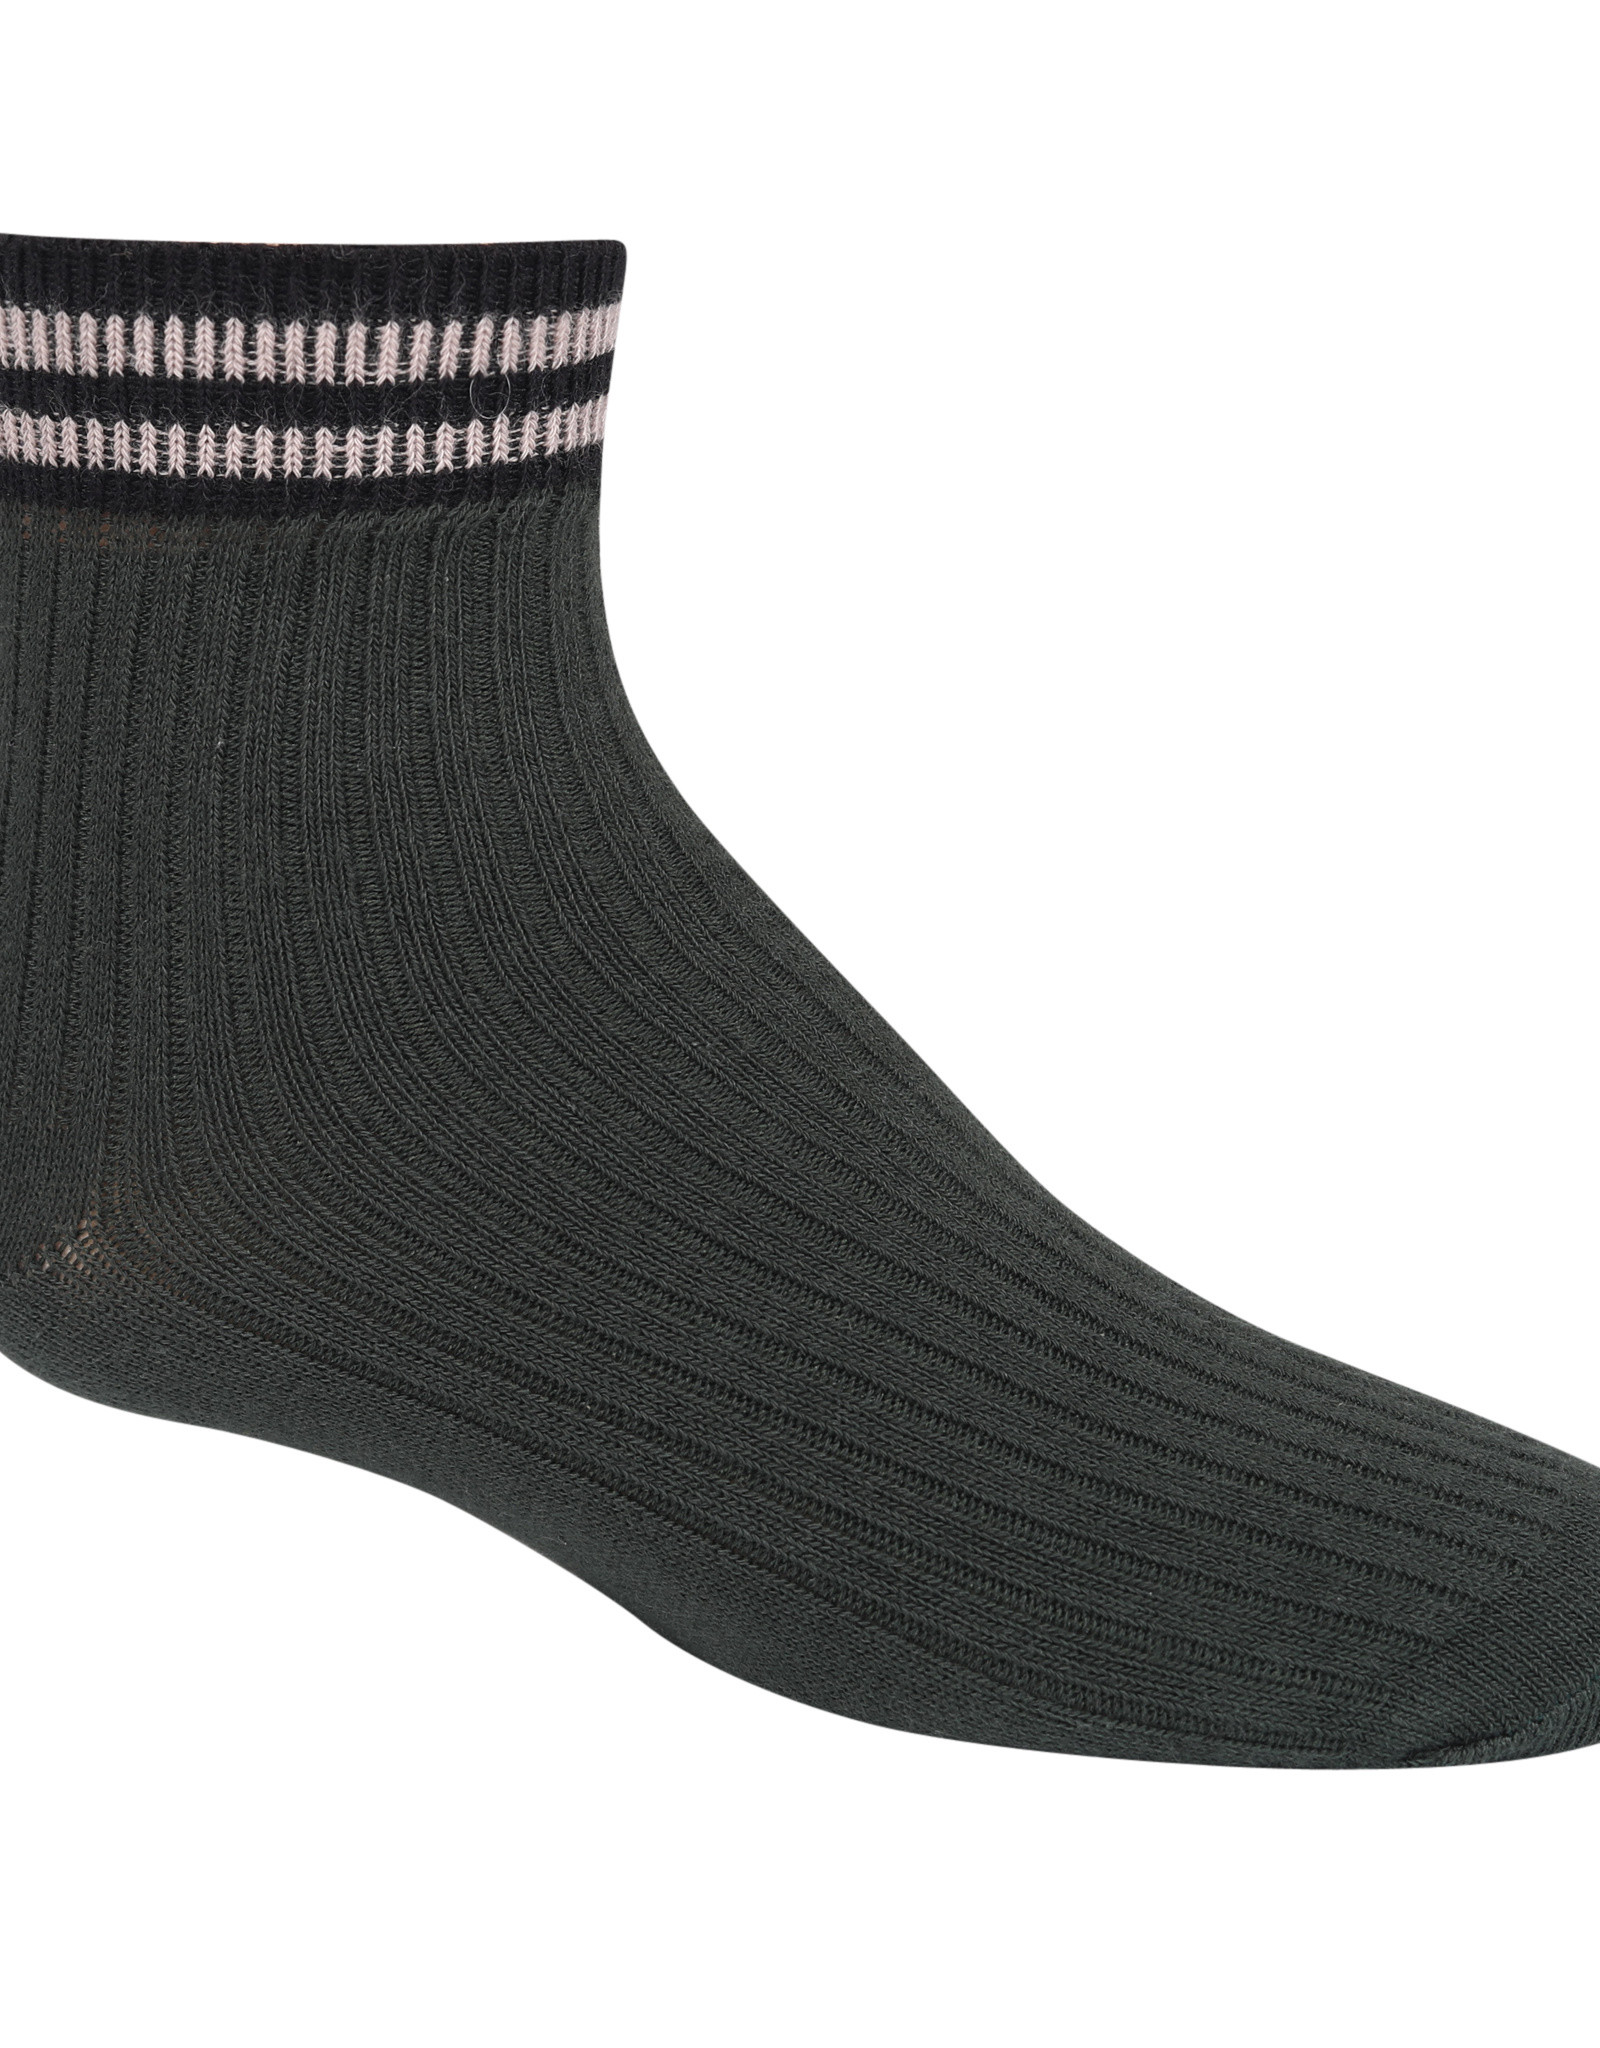 Zubii Zubii Varsity Striped Ankle Sock